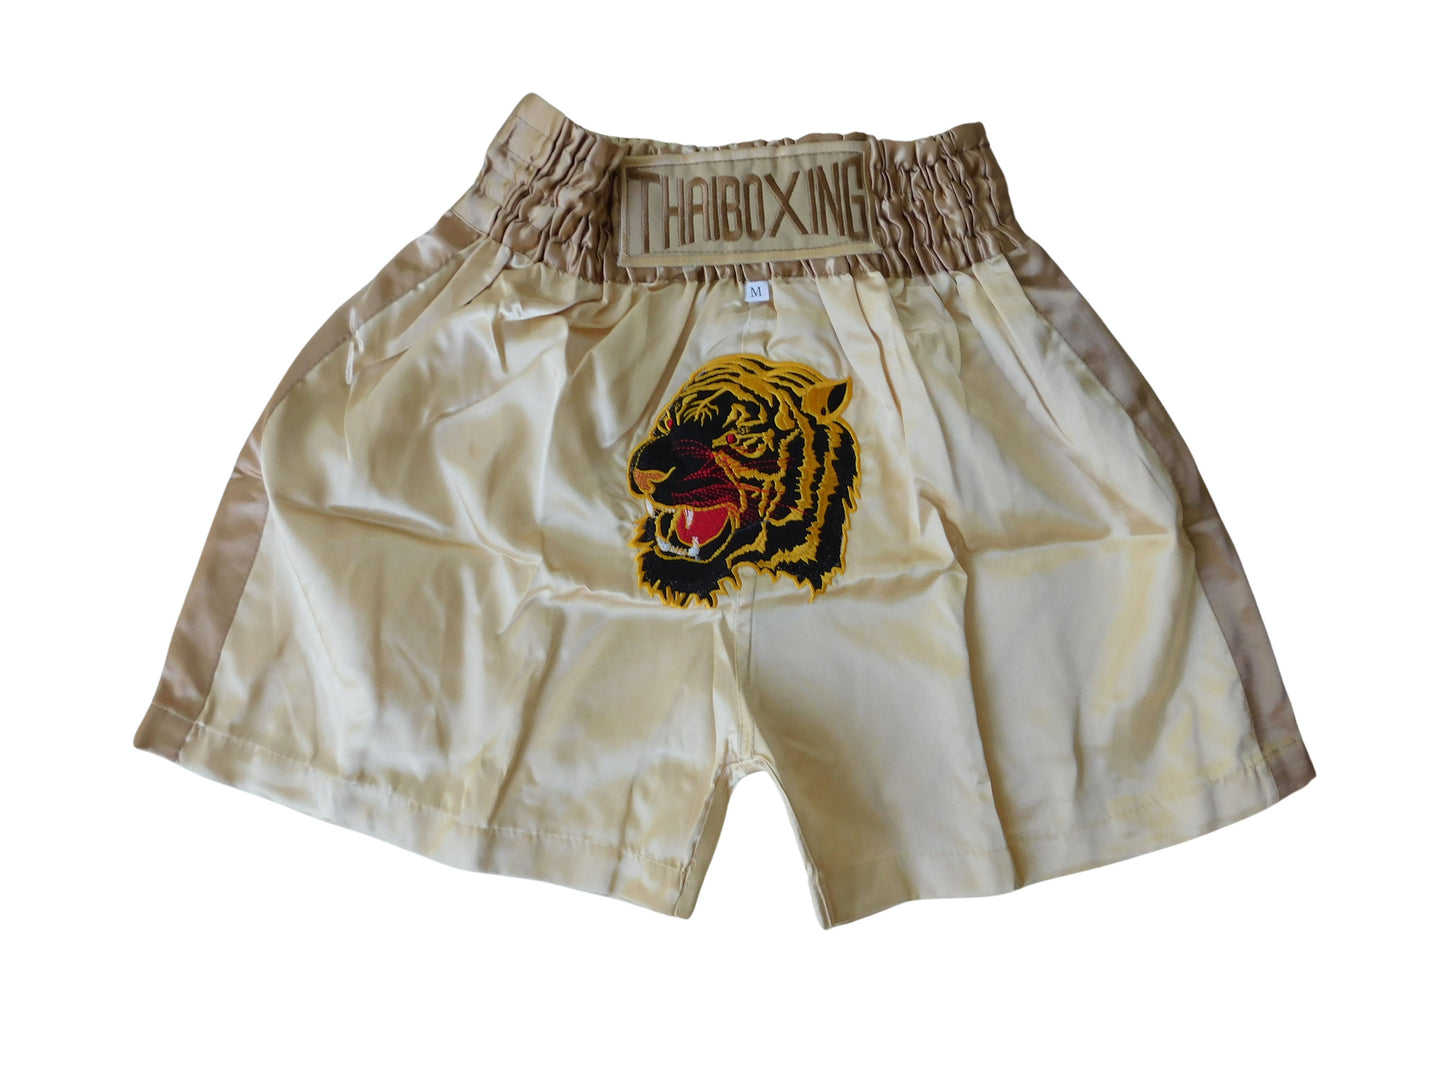 Mini-Format: Trendige Muay Thai TIGER Hose / Shorts für Kids! viele Farben zur Auswahl!